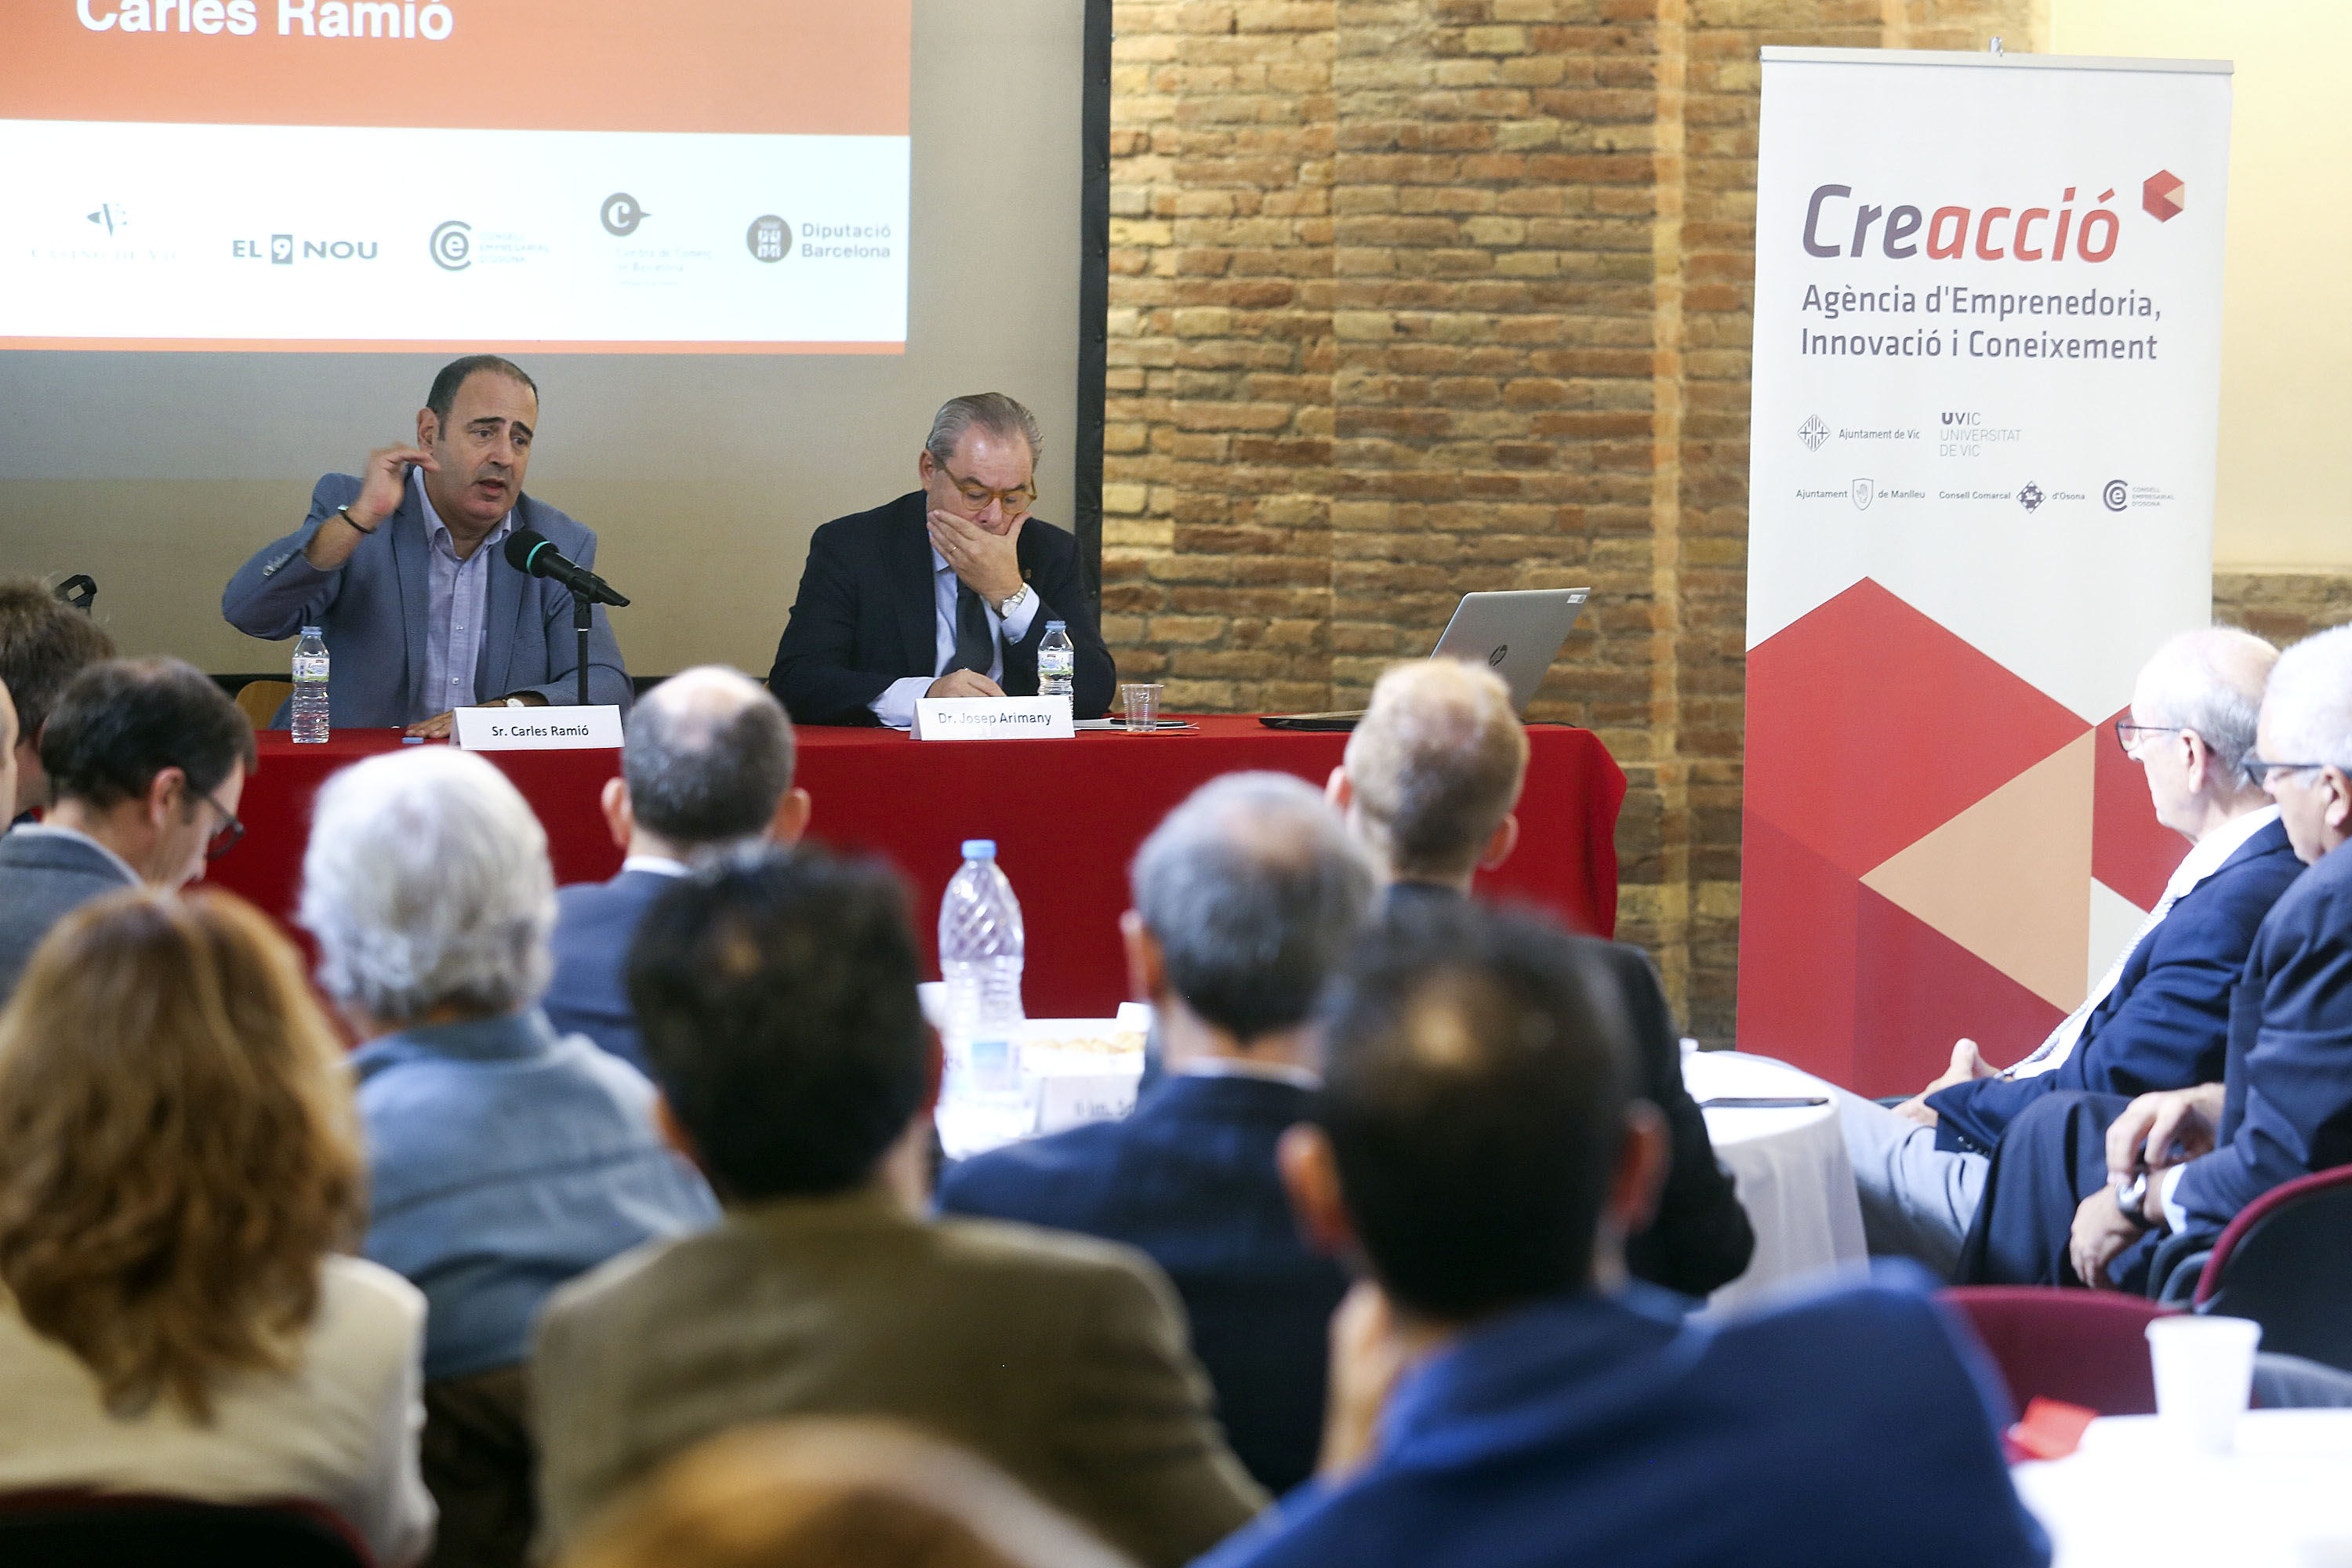 Carles Ramió, parlant, amb Josep Arimany, president de Creacció, que el va presentar a l’Àgora d’Opinió